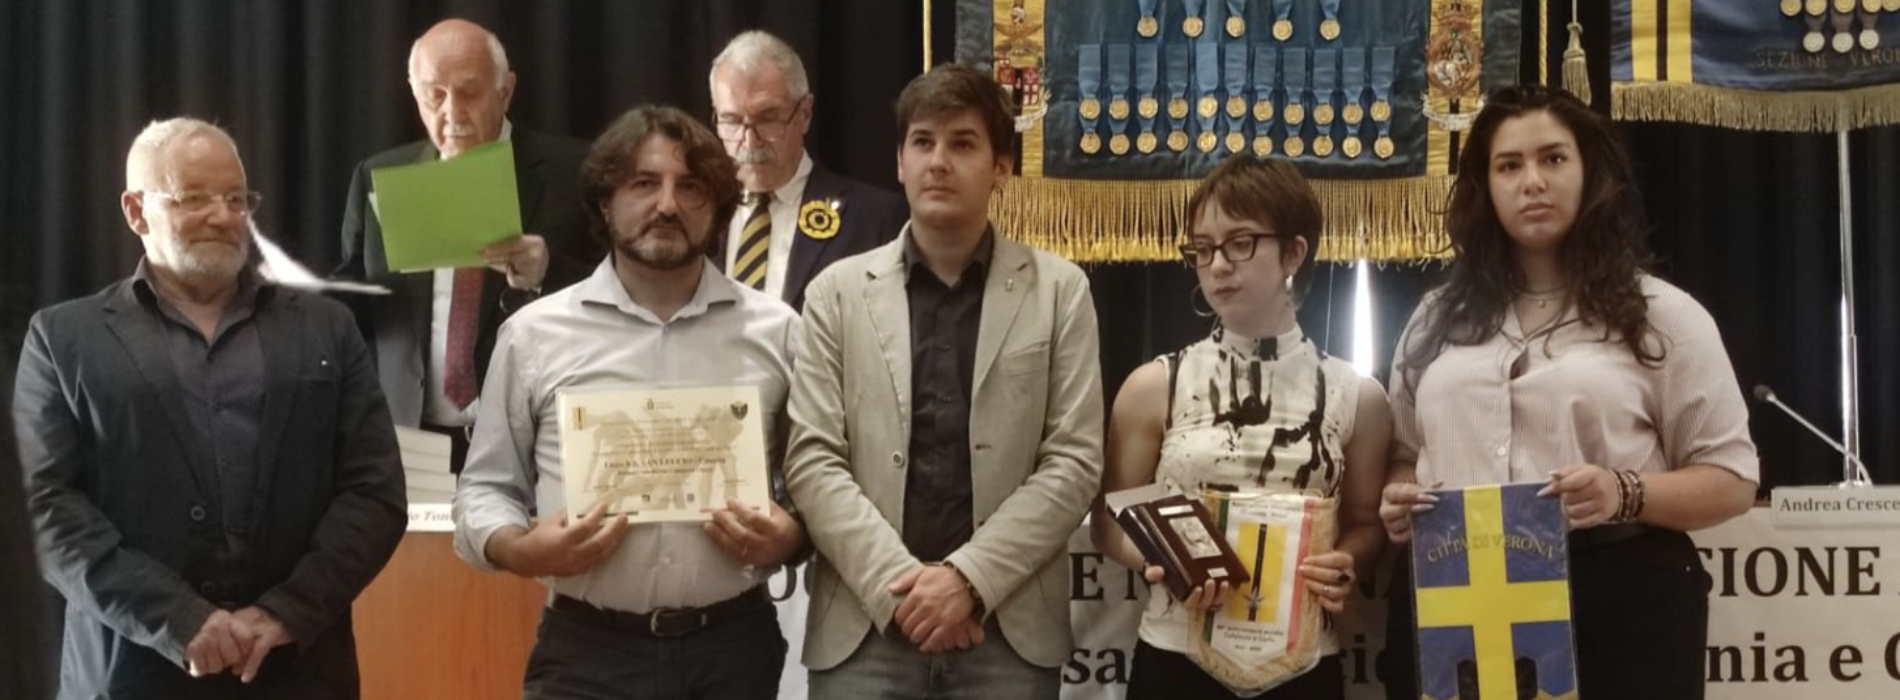 Eccidio di Cefalonia, al Liceo Artistico va il primo premio